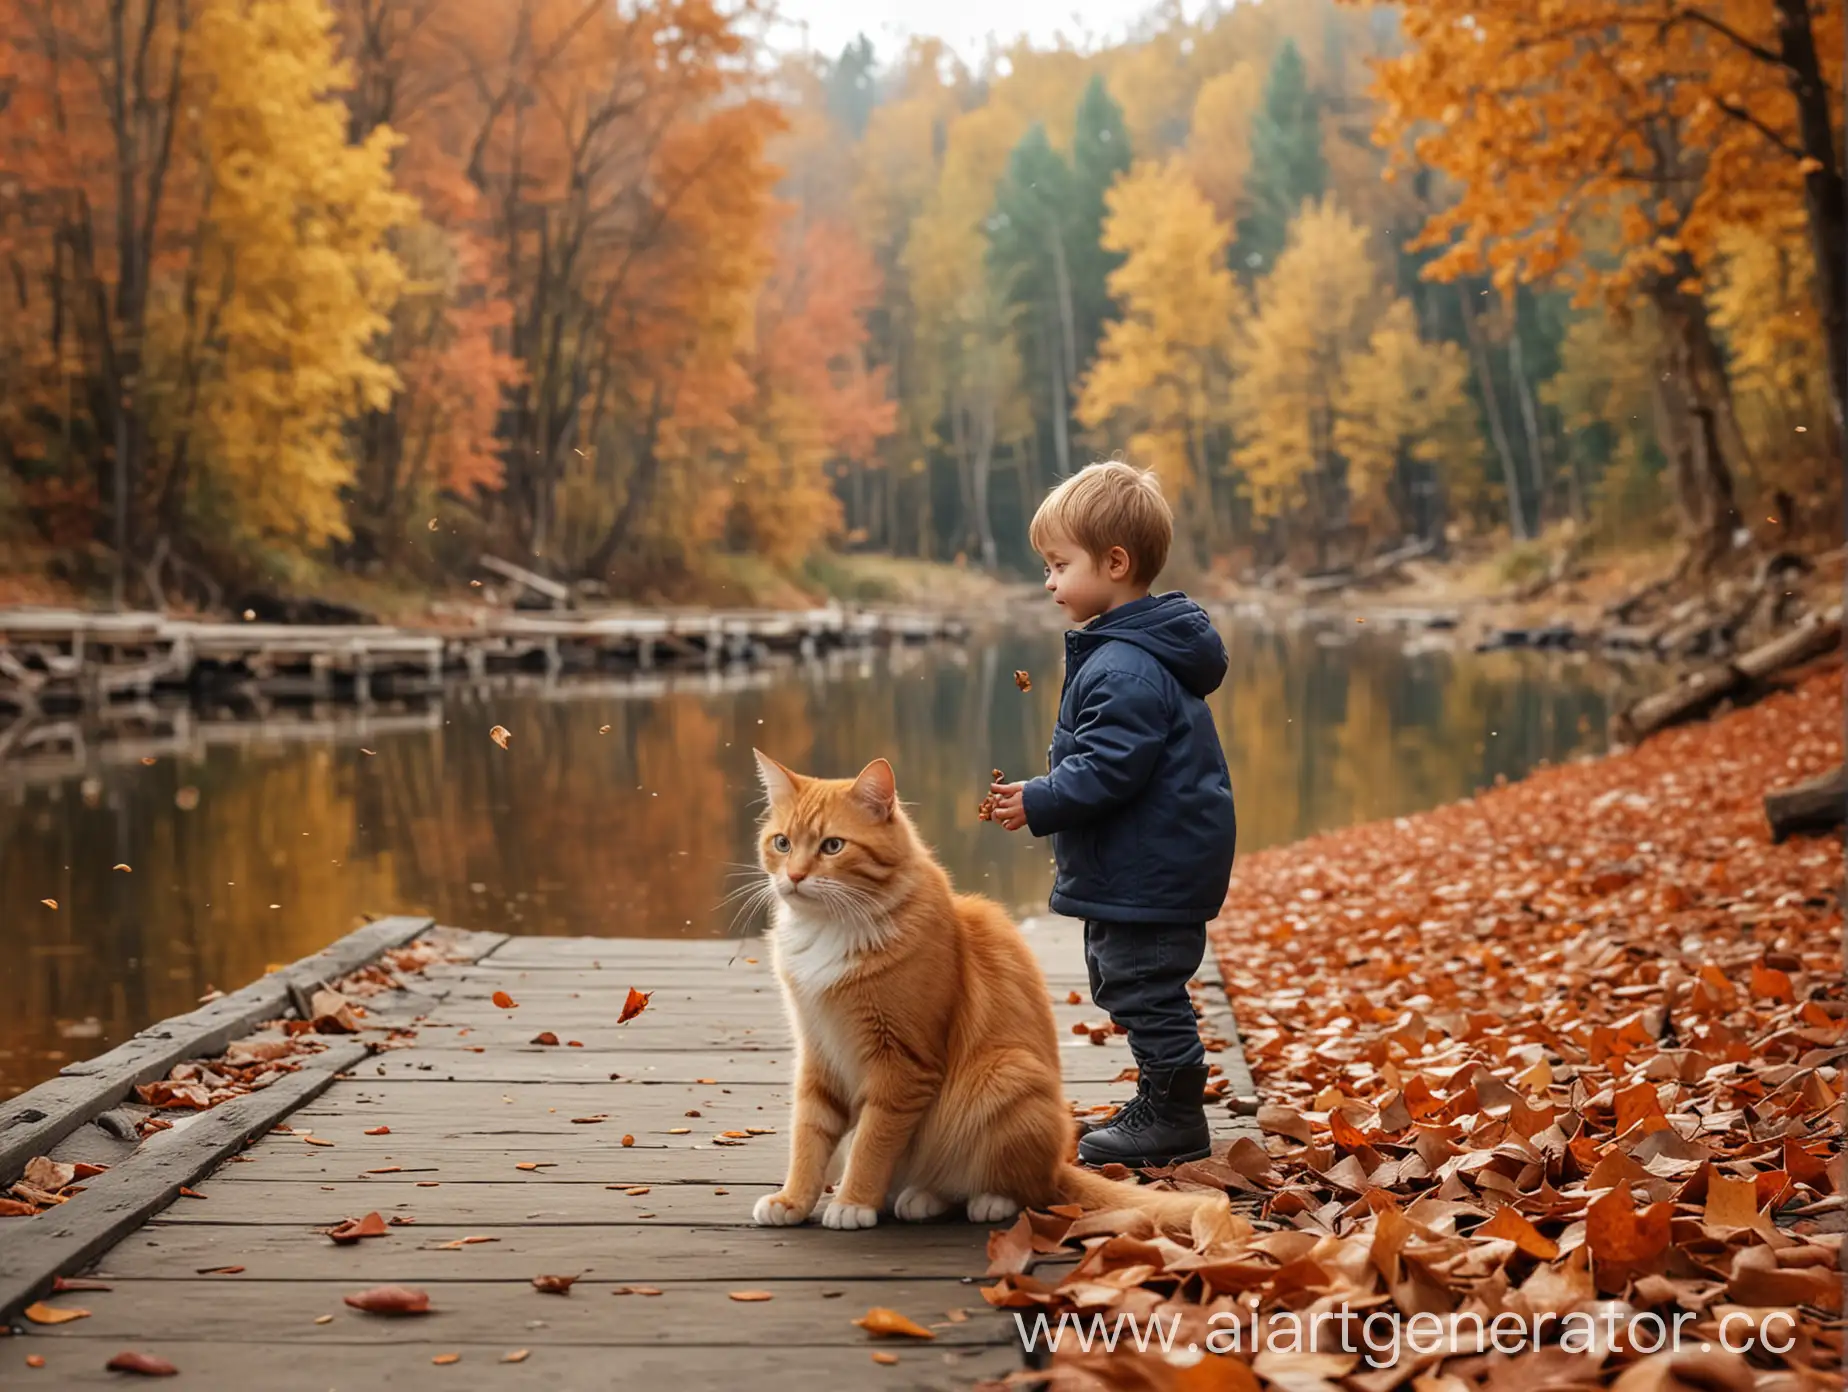 Маленький мальчик сидит на пристани и ловит рыбу, рядом рыжий кот, на фоне осенний лес, летят опавшие листья, фон сильно размыт, очень реалистично